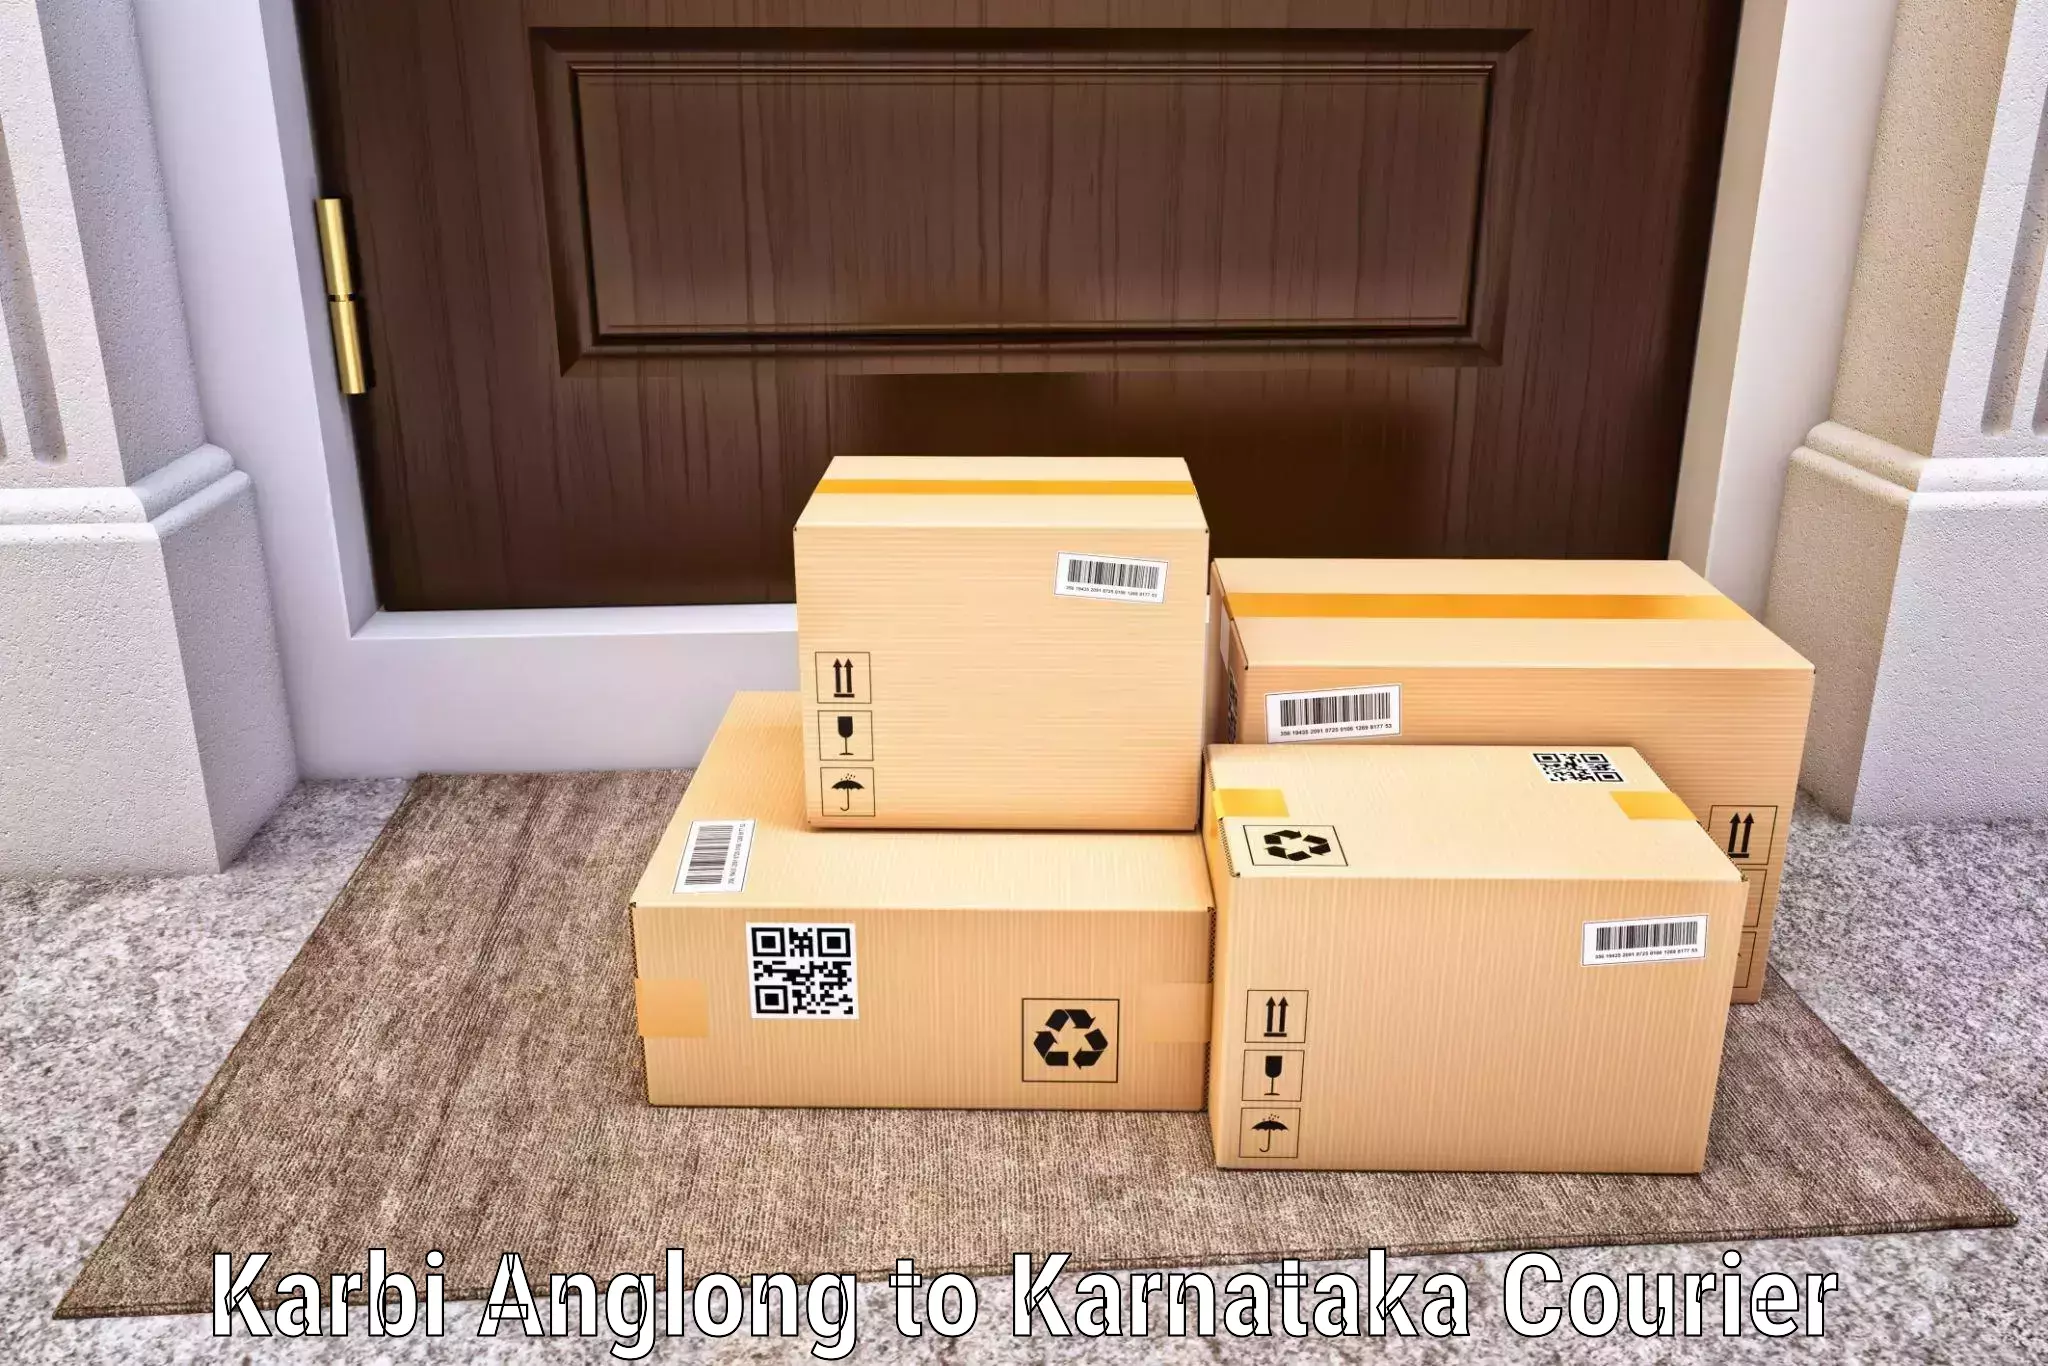 Local courier options Karbi Anglong to Maramanahalli